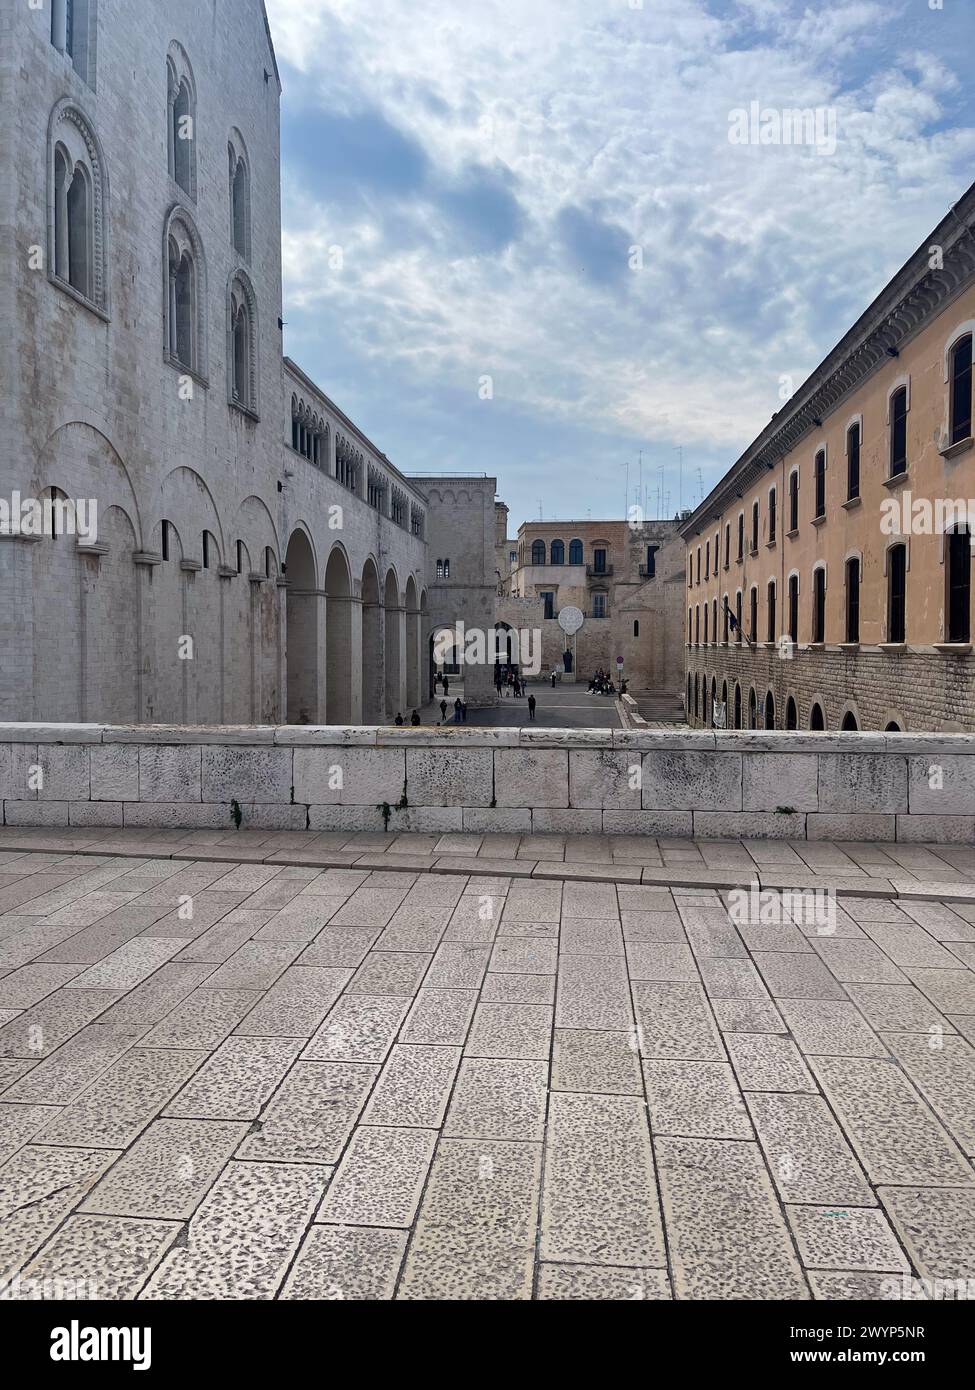 Bari, Italy, Basilica Cattedrale Metropolitana Primaziale San Sabino, St. Nicola Basilica, Palazzo del Sedile,Archdiocese of Bari - Bitonto Stock Photo